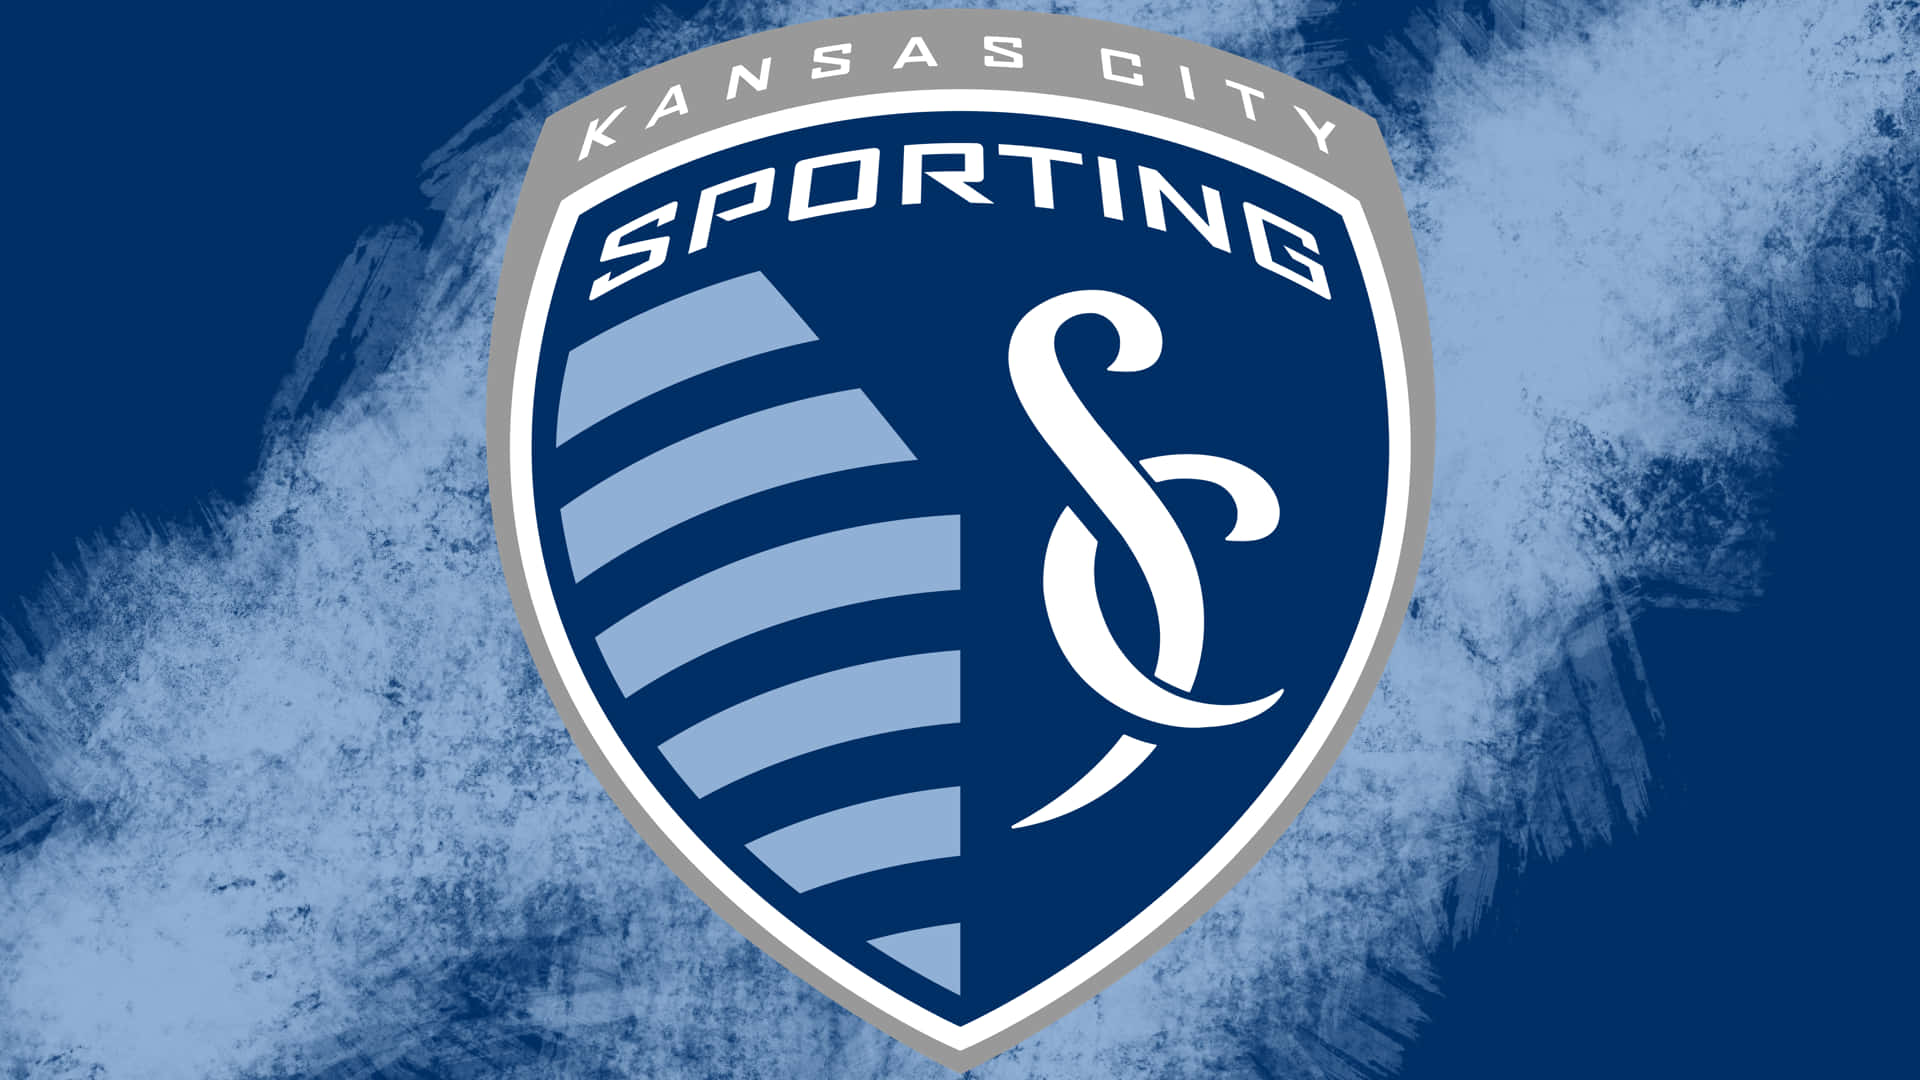 Logode Sporting Kansas City En Fondo Azul. Fondo de pantalla